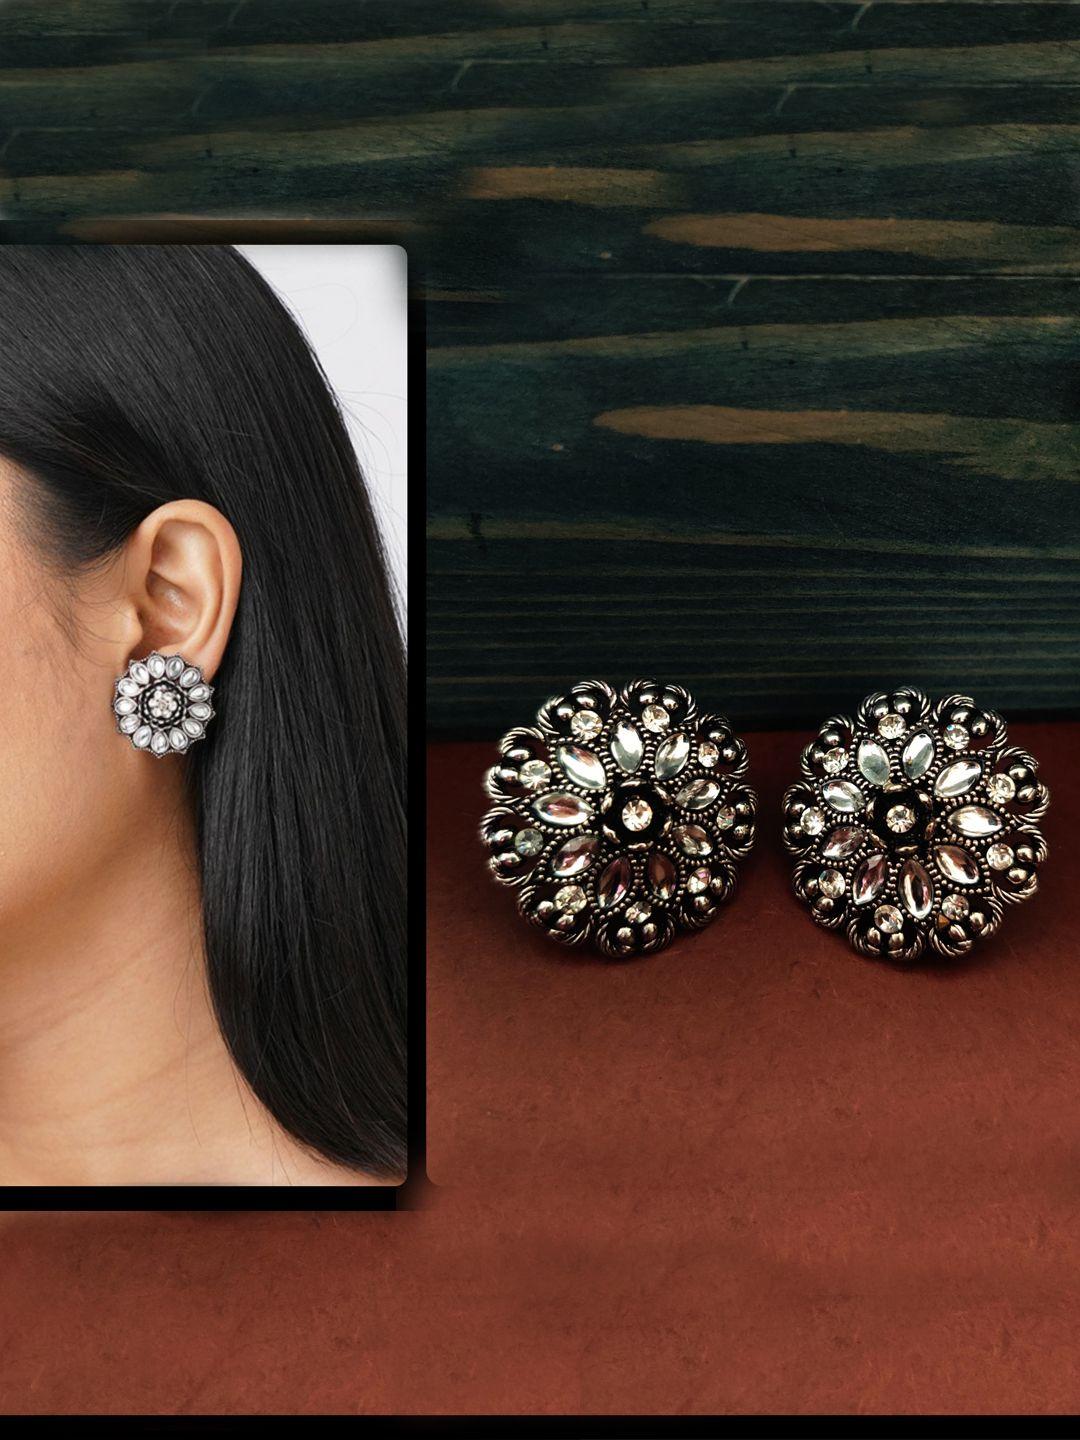 binnis wardrobe silver-toned contemporary studs earrings